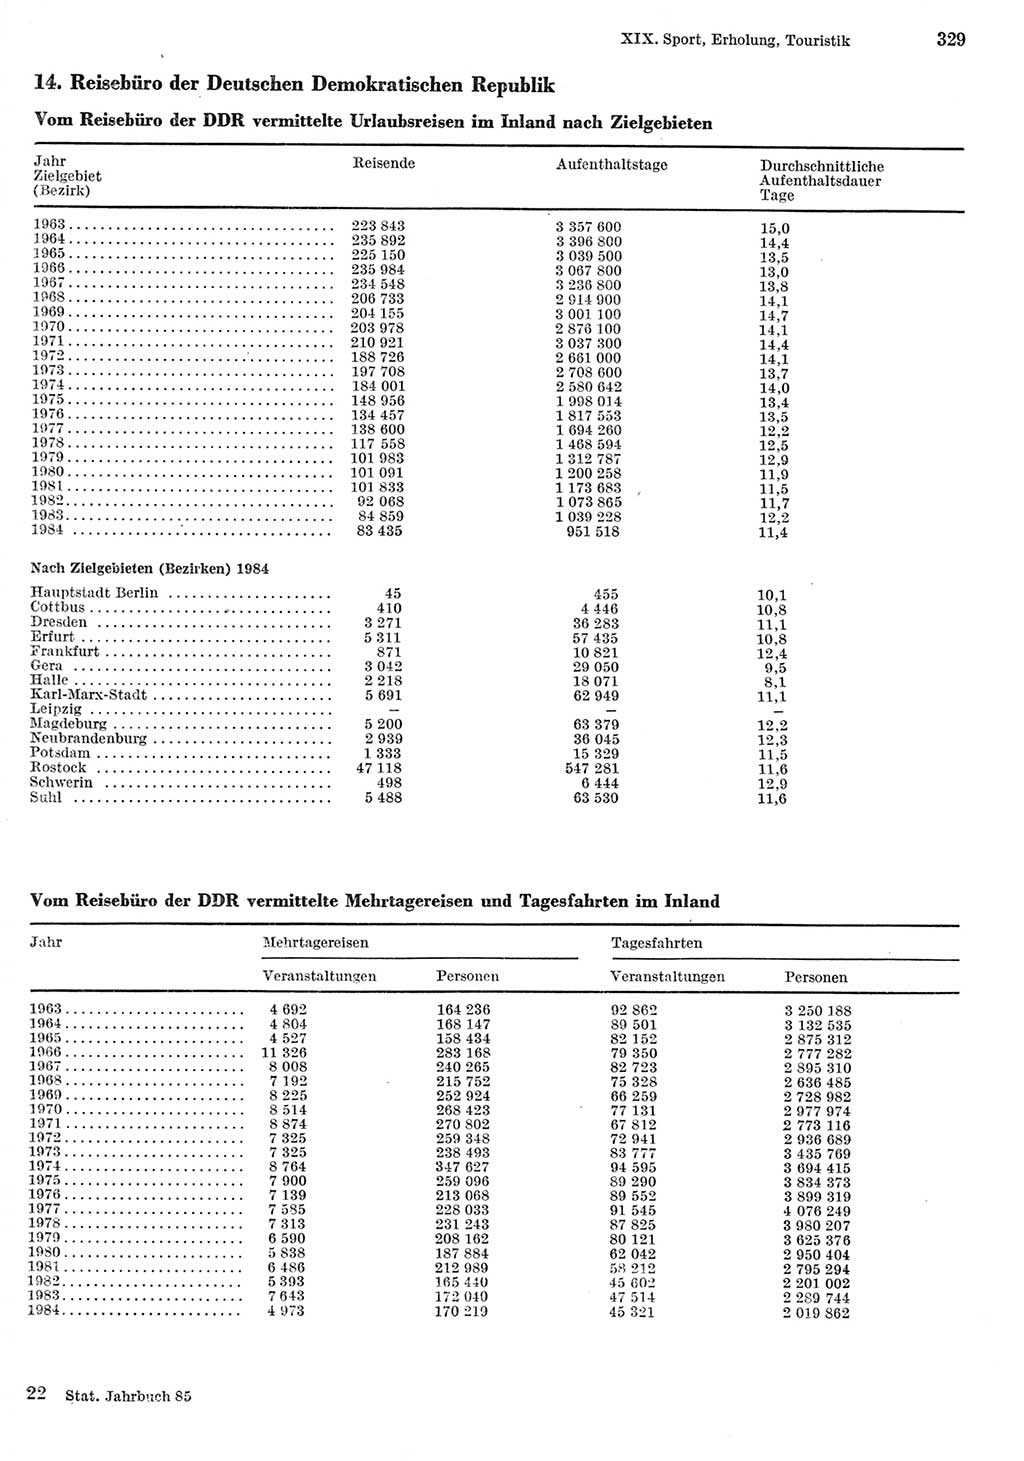 Statistisches Jahrbuch der Deutschen Demokratischen Republik (DDR) 1985, Seite 329 (Stat. Jb. DDR 1985, S. 329)